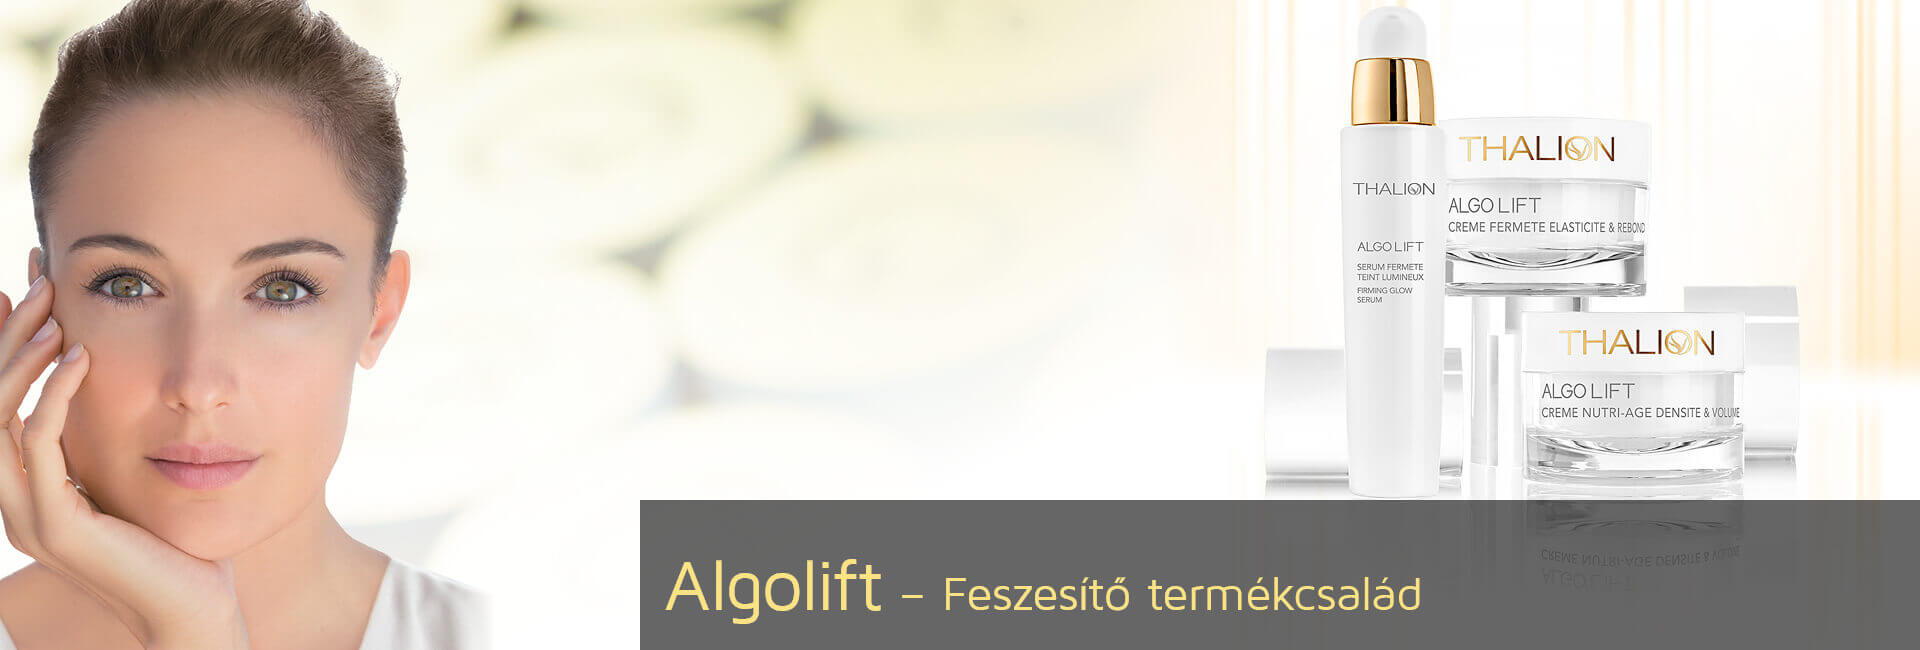 Algolift Firmness - Bőrfiatalítás & Feszesítés